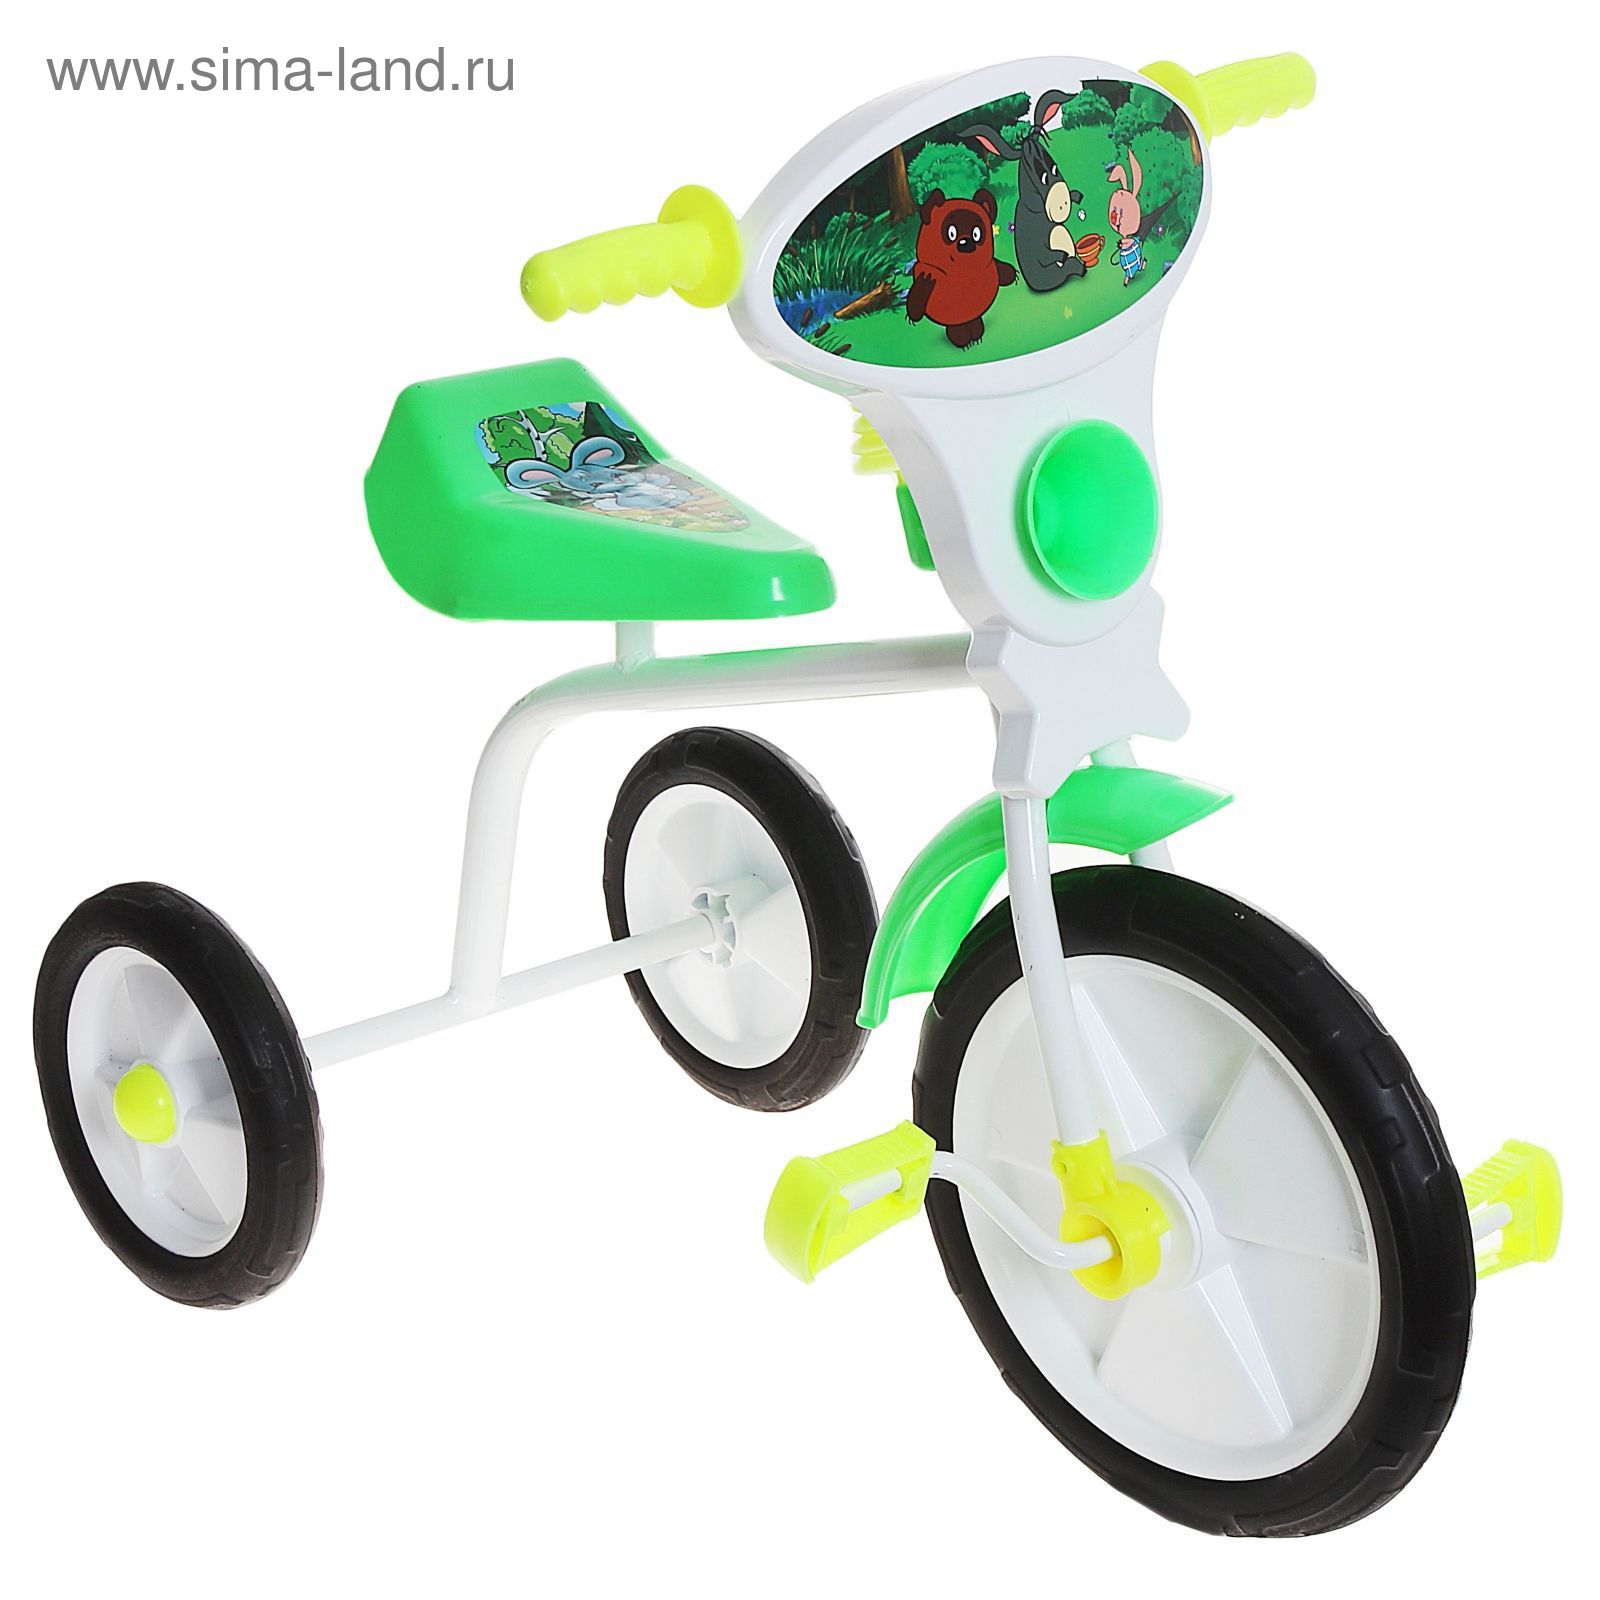 Велосипед трехколесный  "Малыш"  01П, цвет зеленый, фасовка: 1шт.